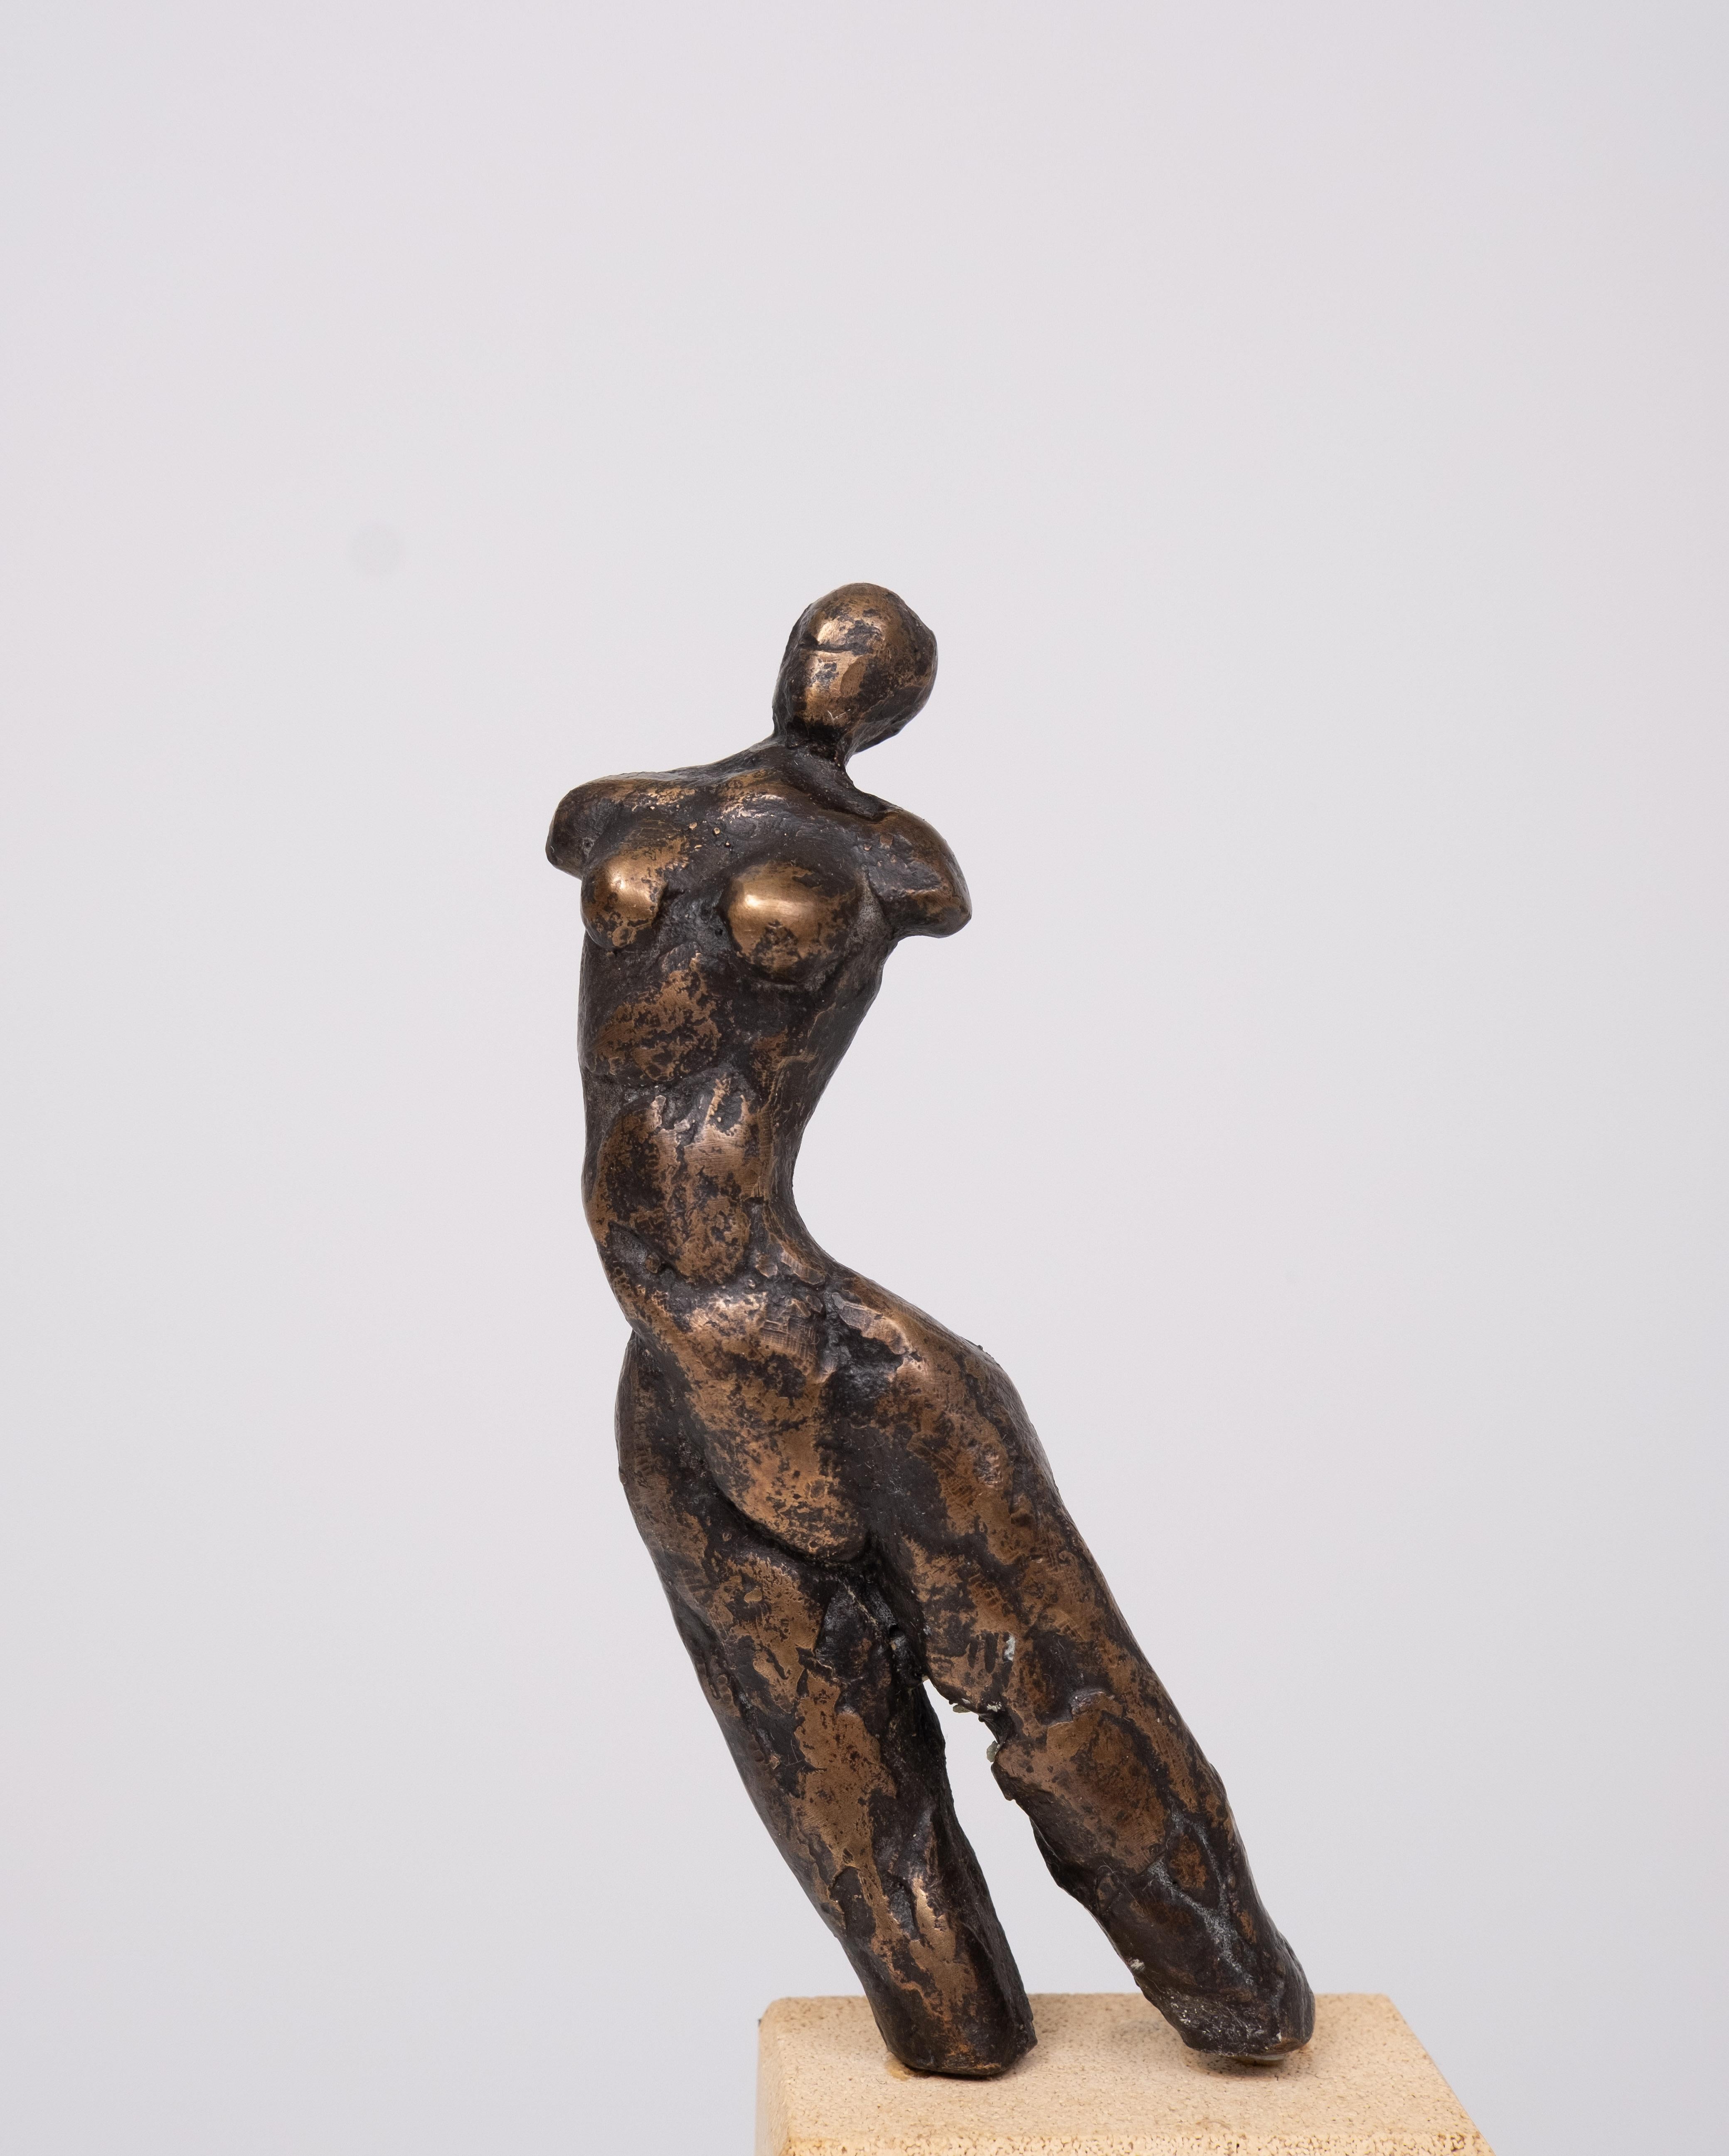 Très beau torse de femme en bronze de Harry Storms ,1945 -2023 ,sur un socle en grès .Storms a été formé à l'académie pédagogique. Il a d'abord été professeur d'artisanat. Il a également suivi une formation à l'Académie des arts visuels de Varsovie,